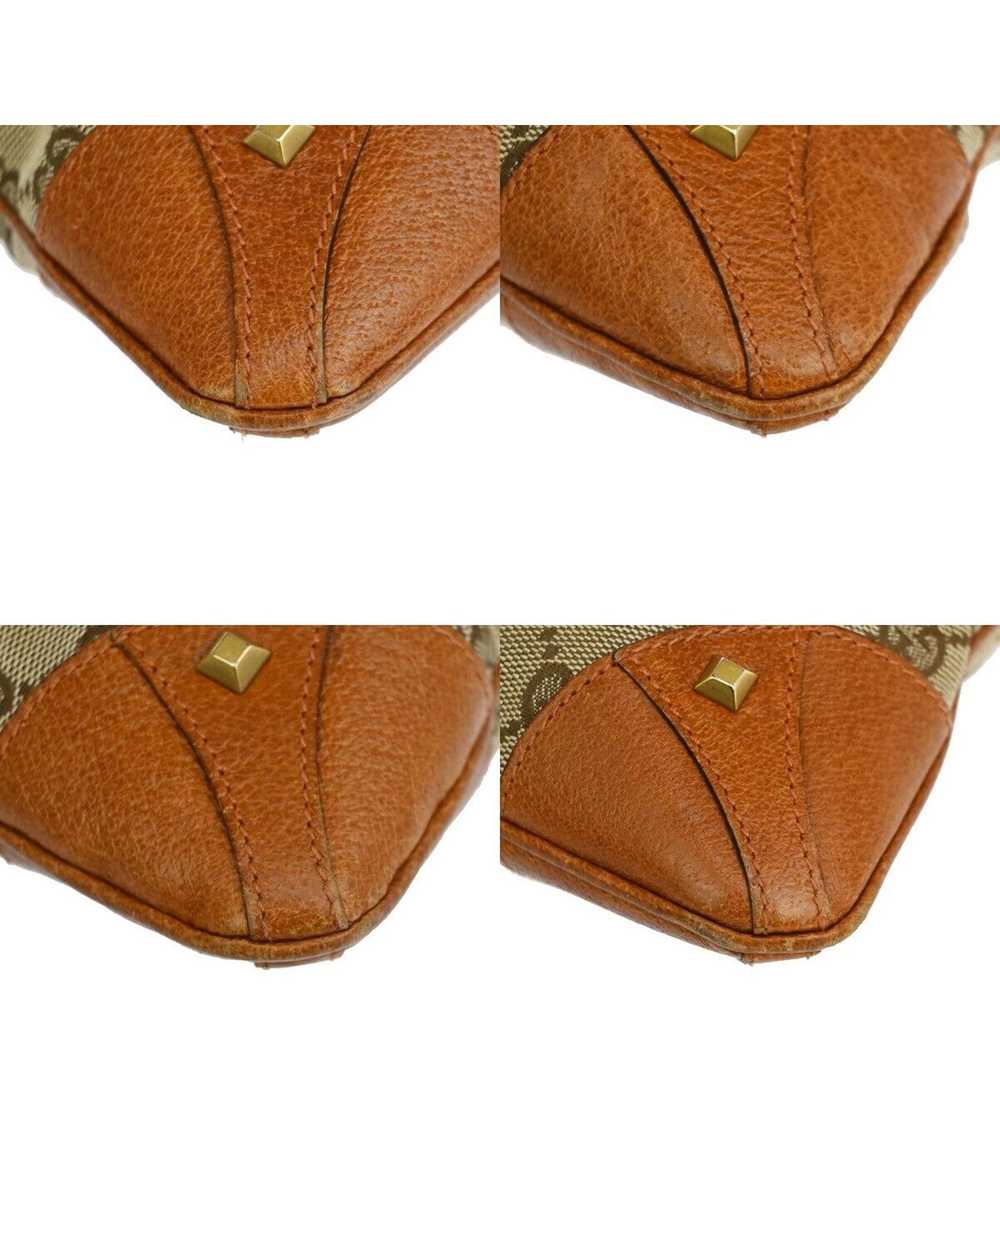 Gucci Canvas Shoulder Bag by Luxury Designer - image 7